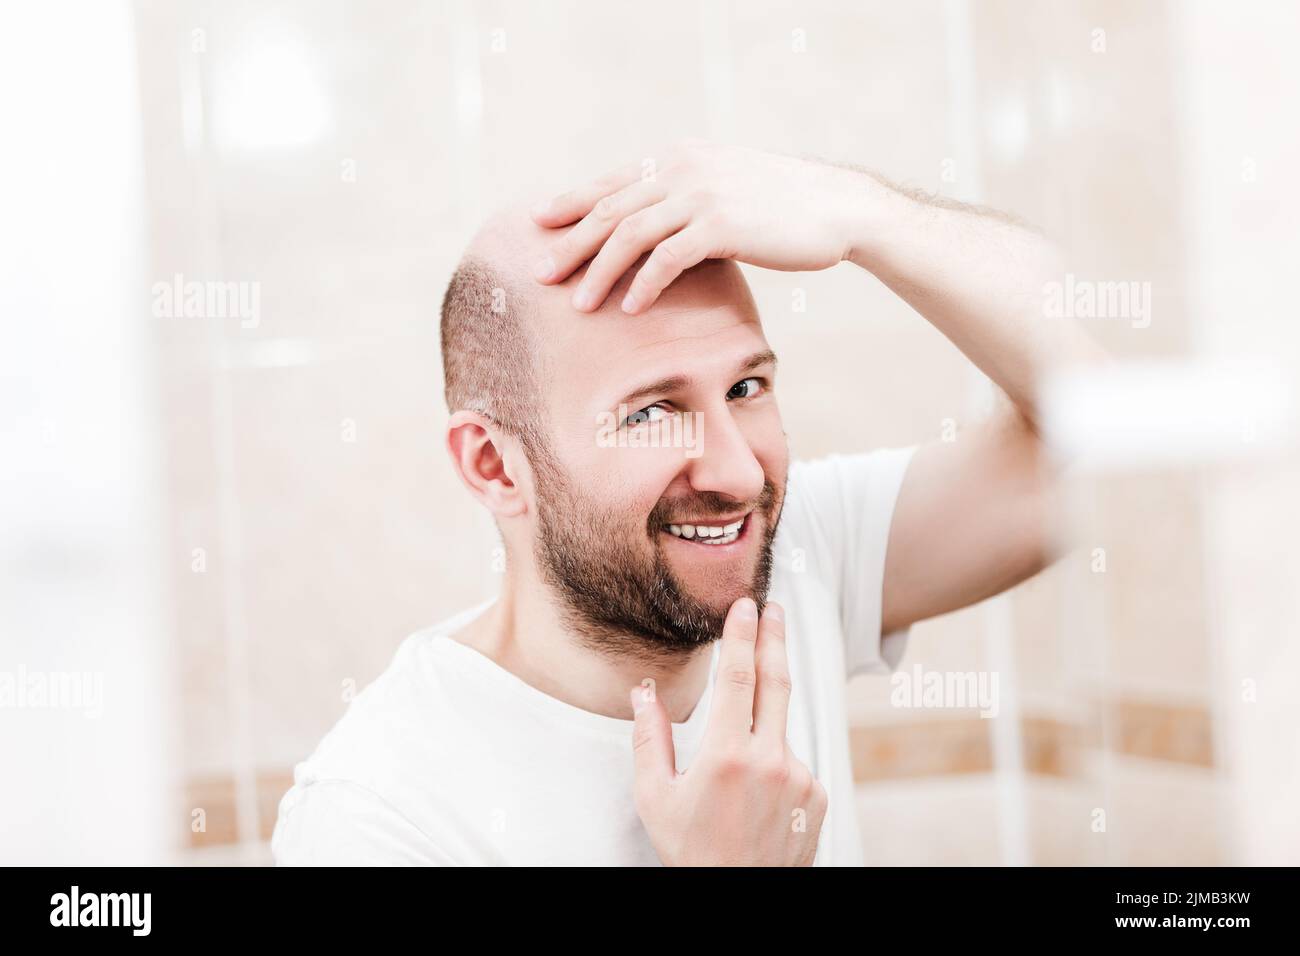 Bald man looking mirror at head baldness and hair loss Stock Photo